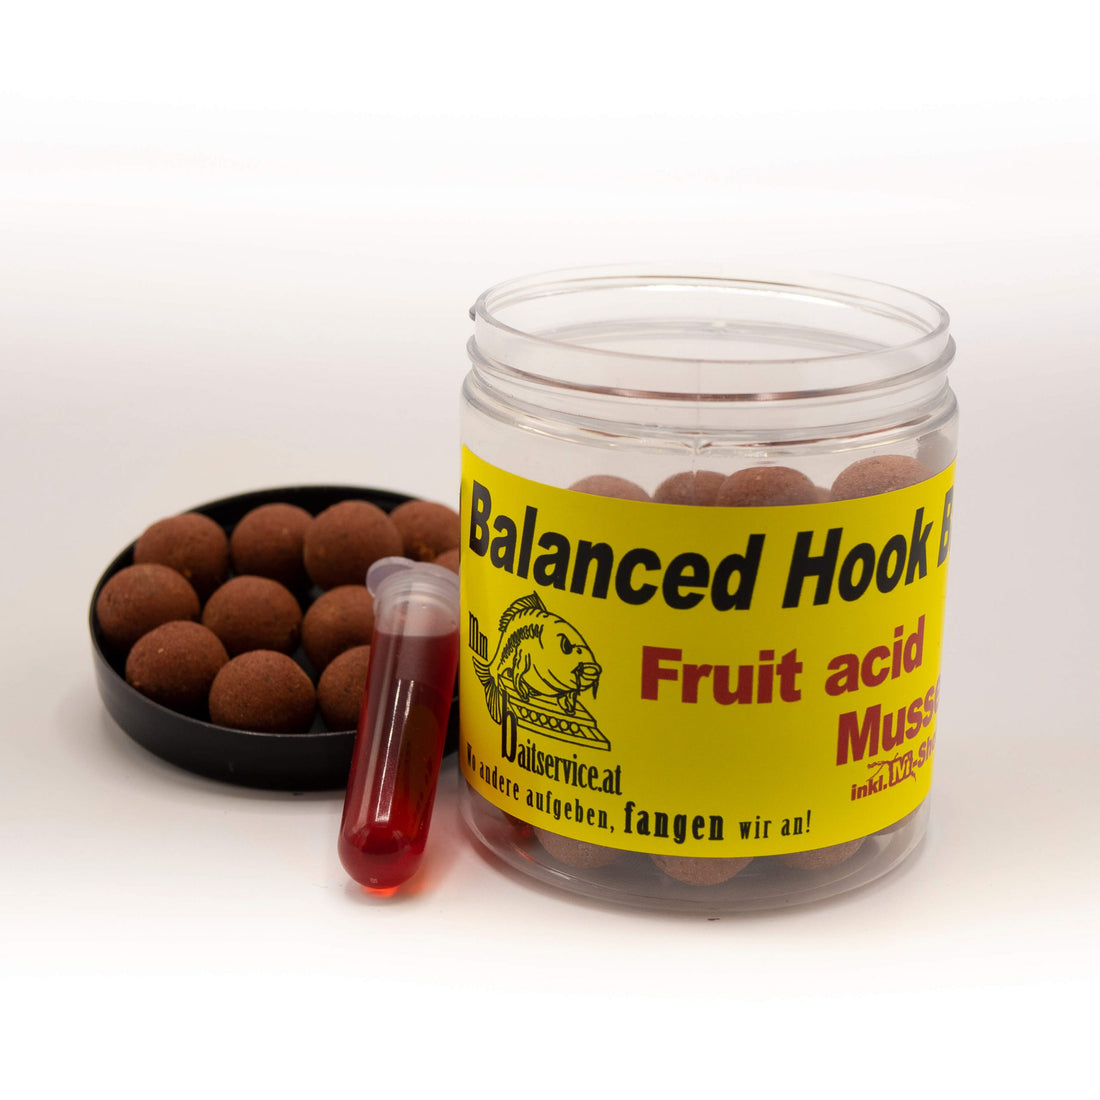 MM Baitservice Balanced Hookbaits Fruit Acid Mussel 16mm